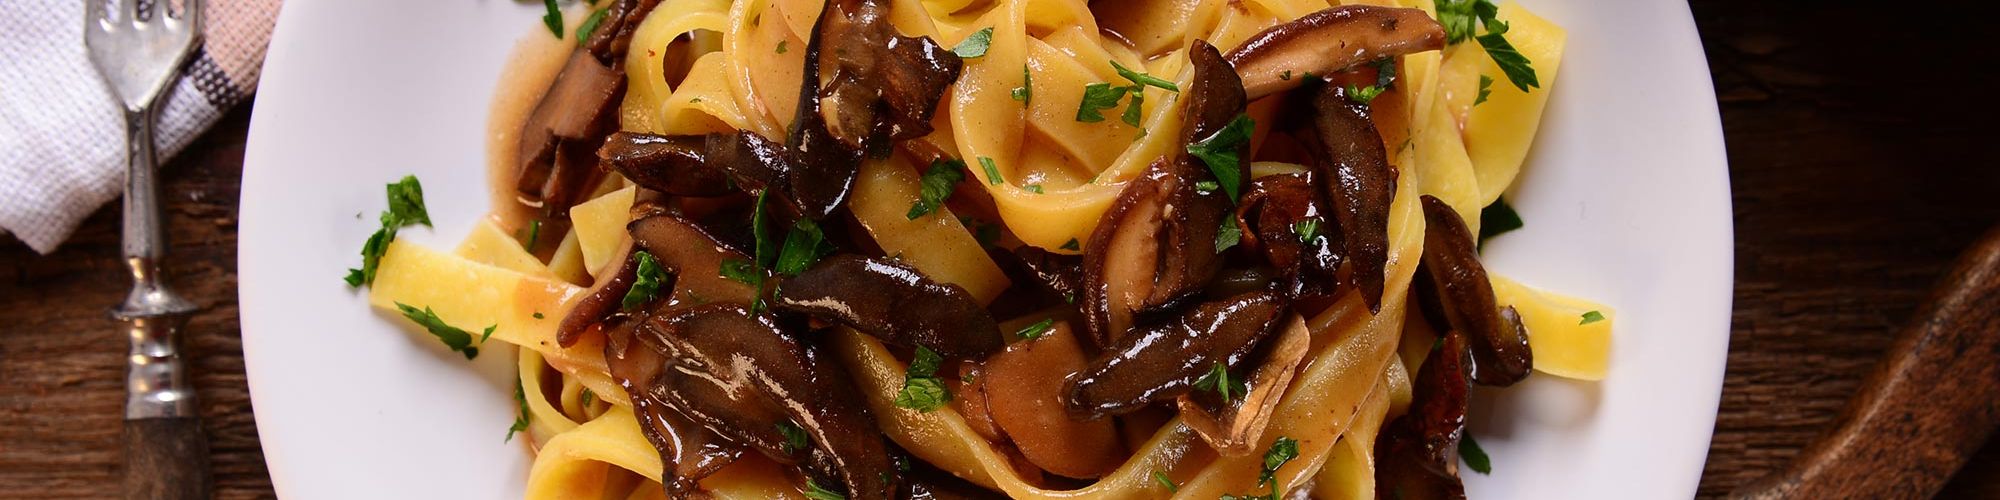 ricetta Tagliatelle con salsa di noci e funghi porcini con pasta fresca